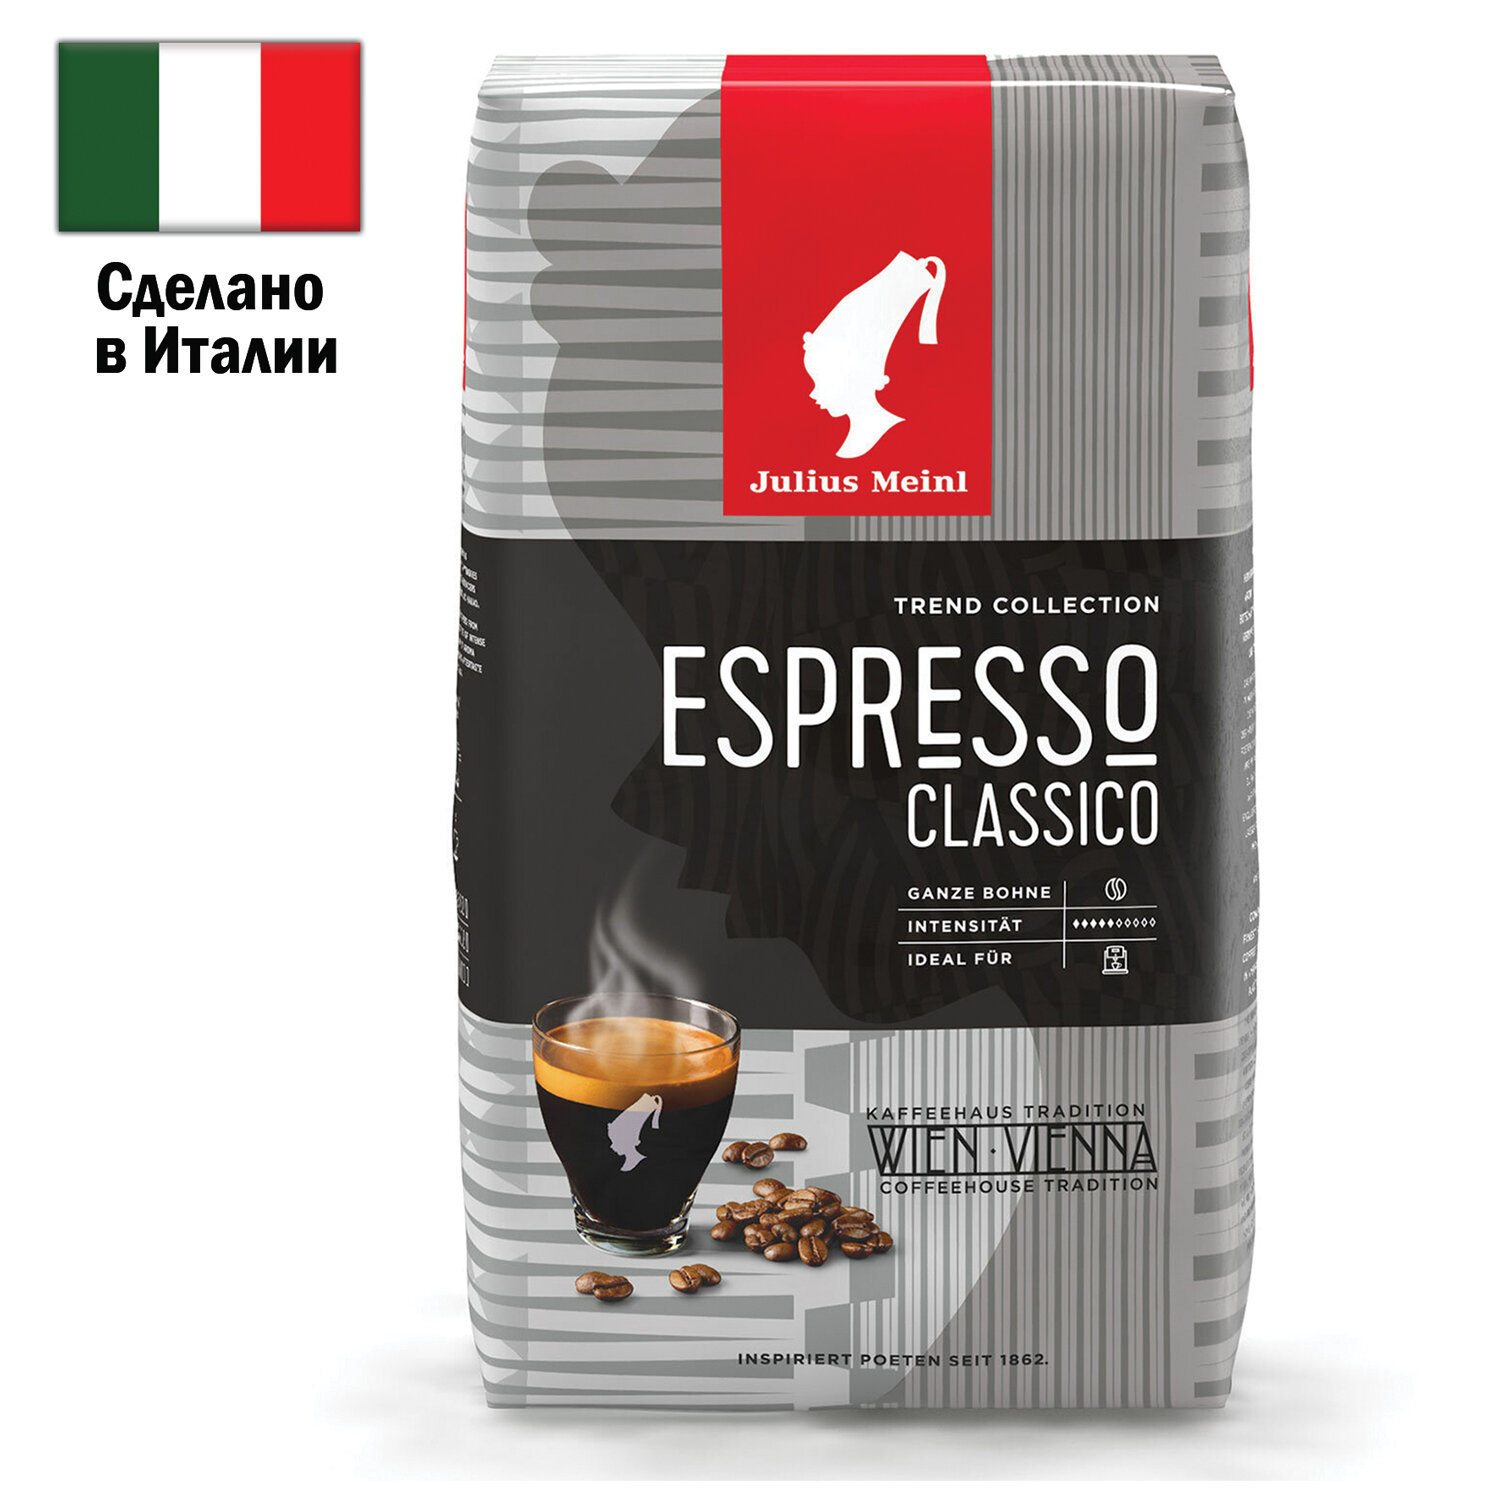    JULIUS MEINL 89534 Espresso Classico Trend Collection 1 .